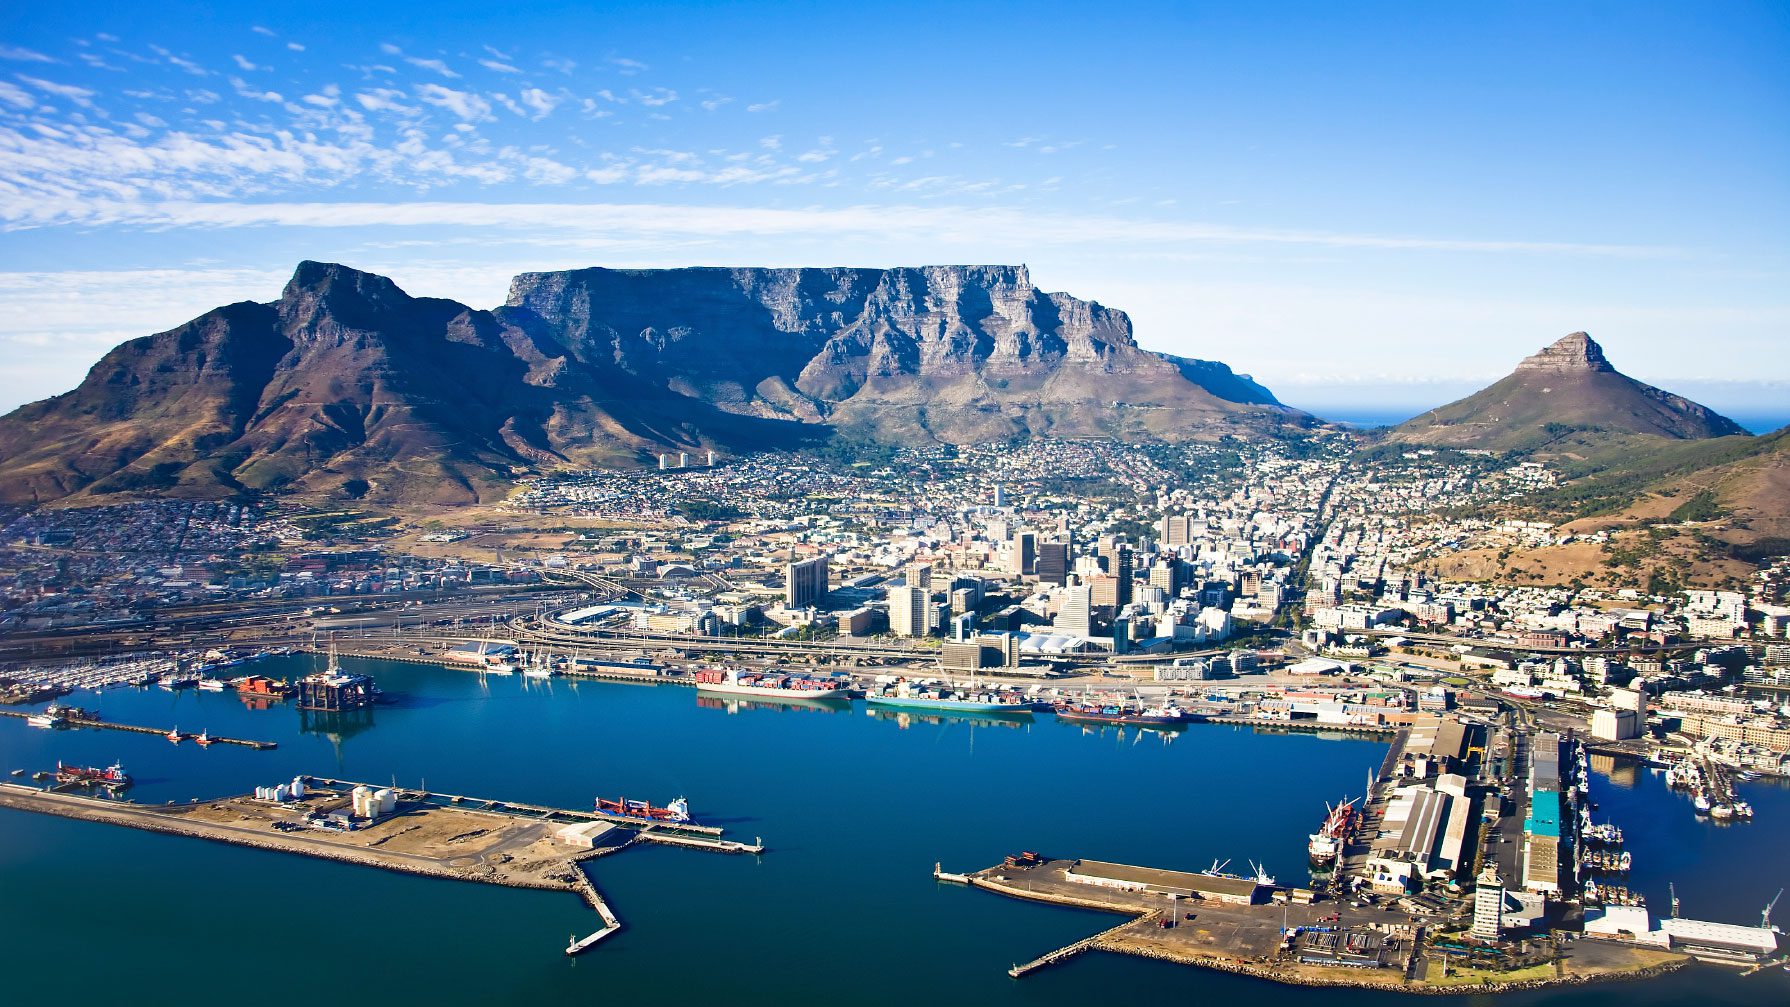 2016 – Cape Town